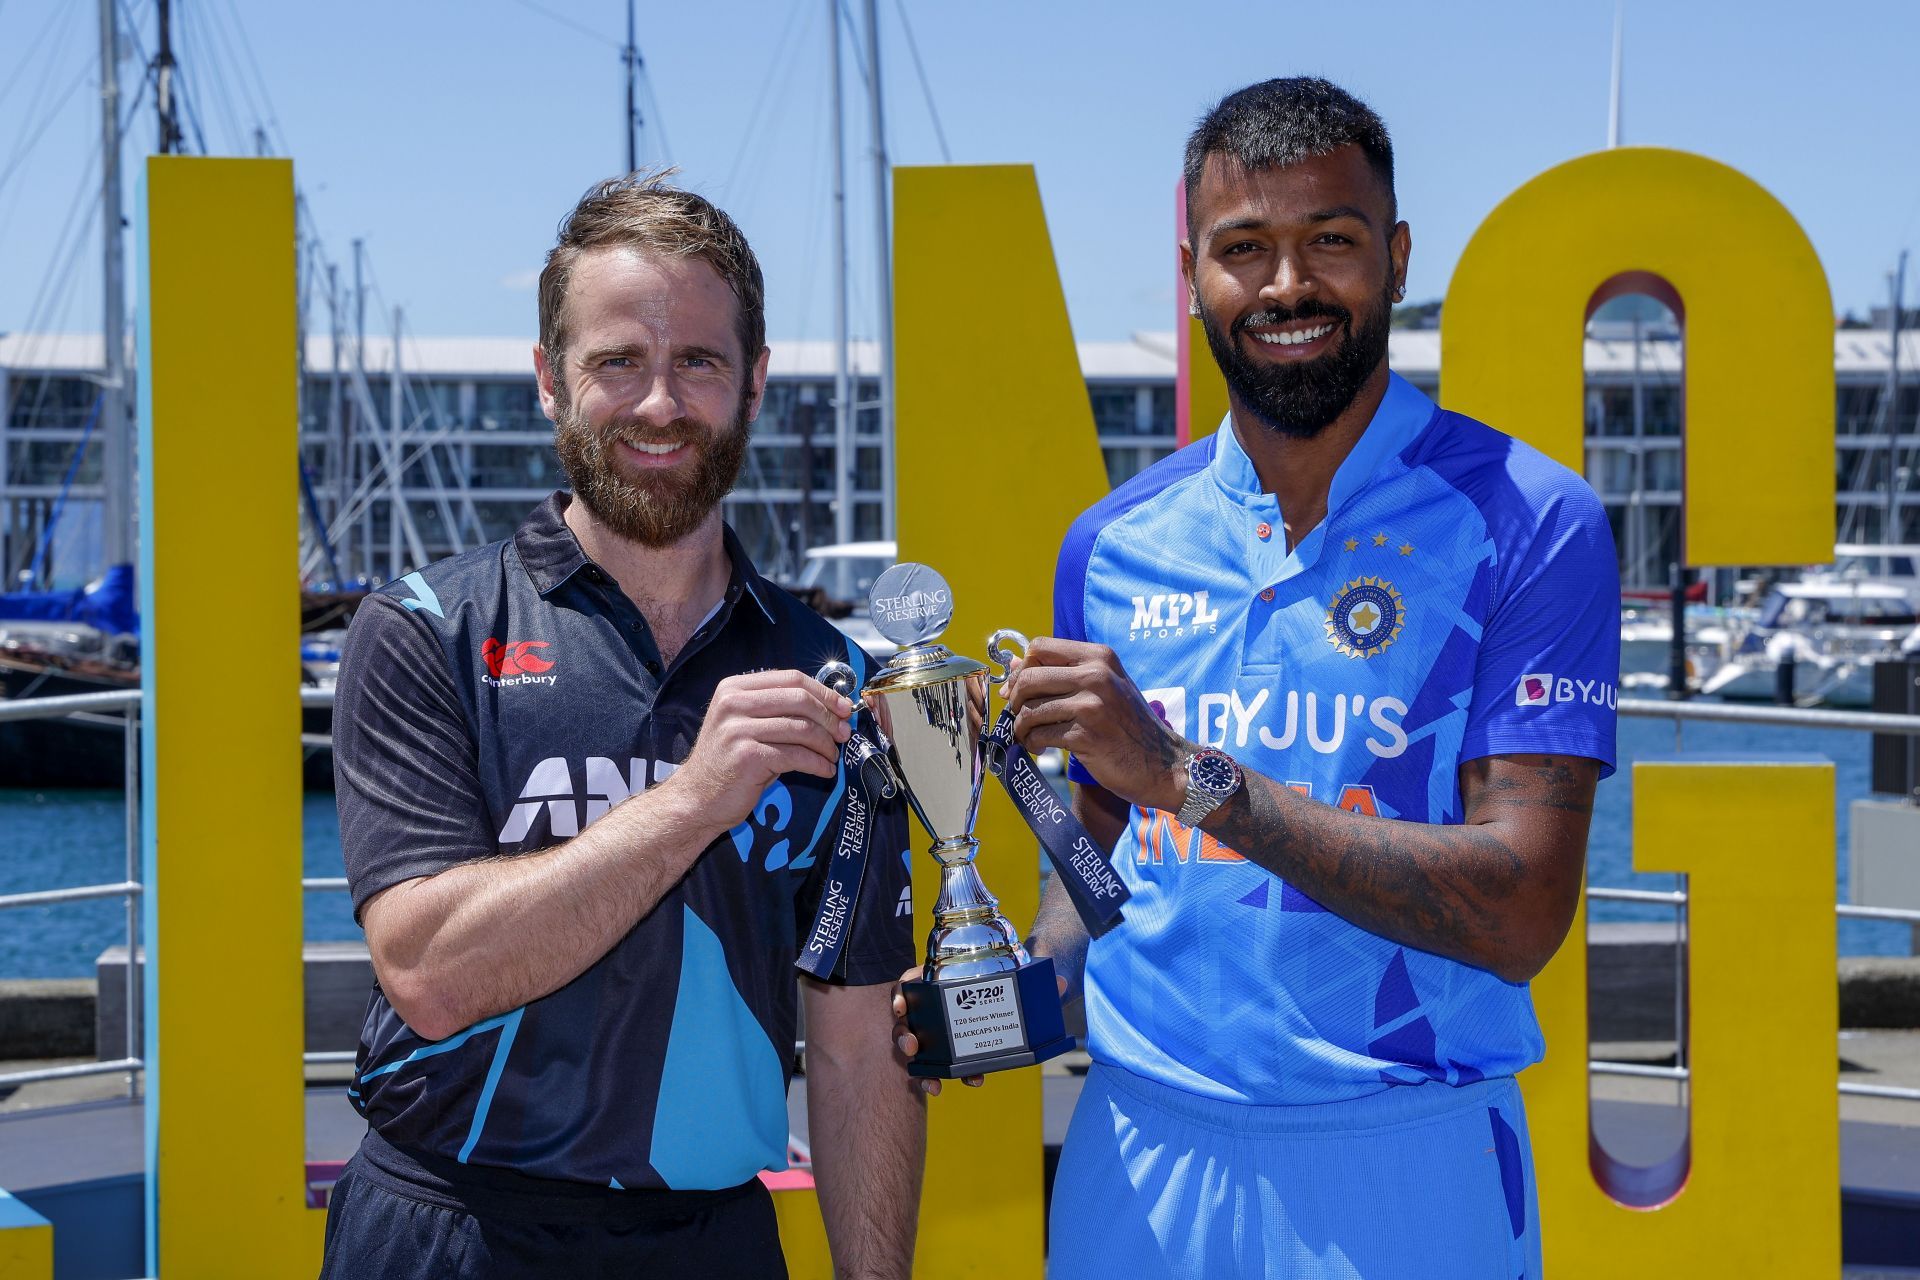 New Zealand v India T20I series will start from November 18